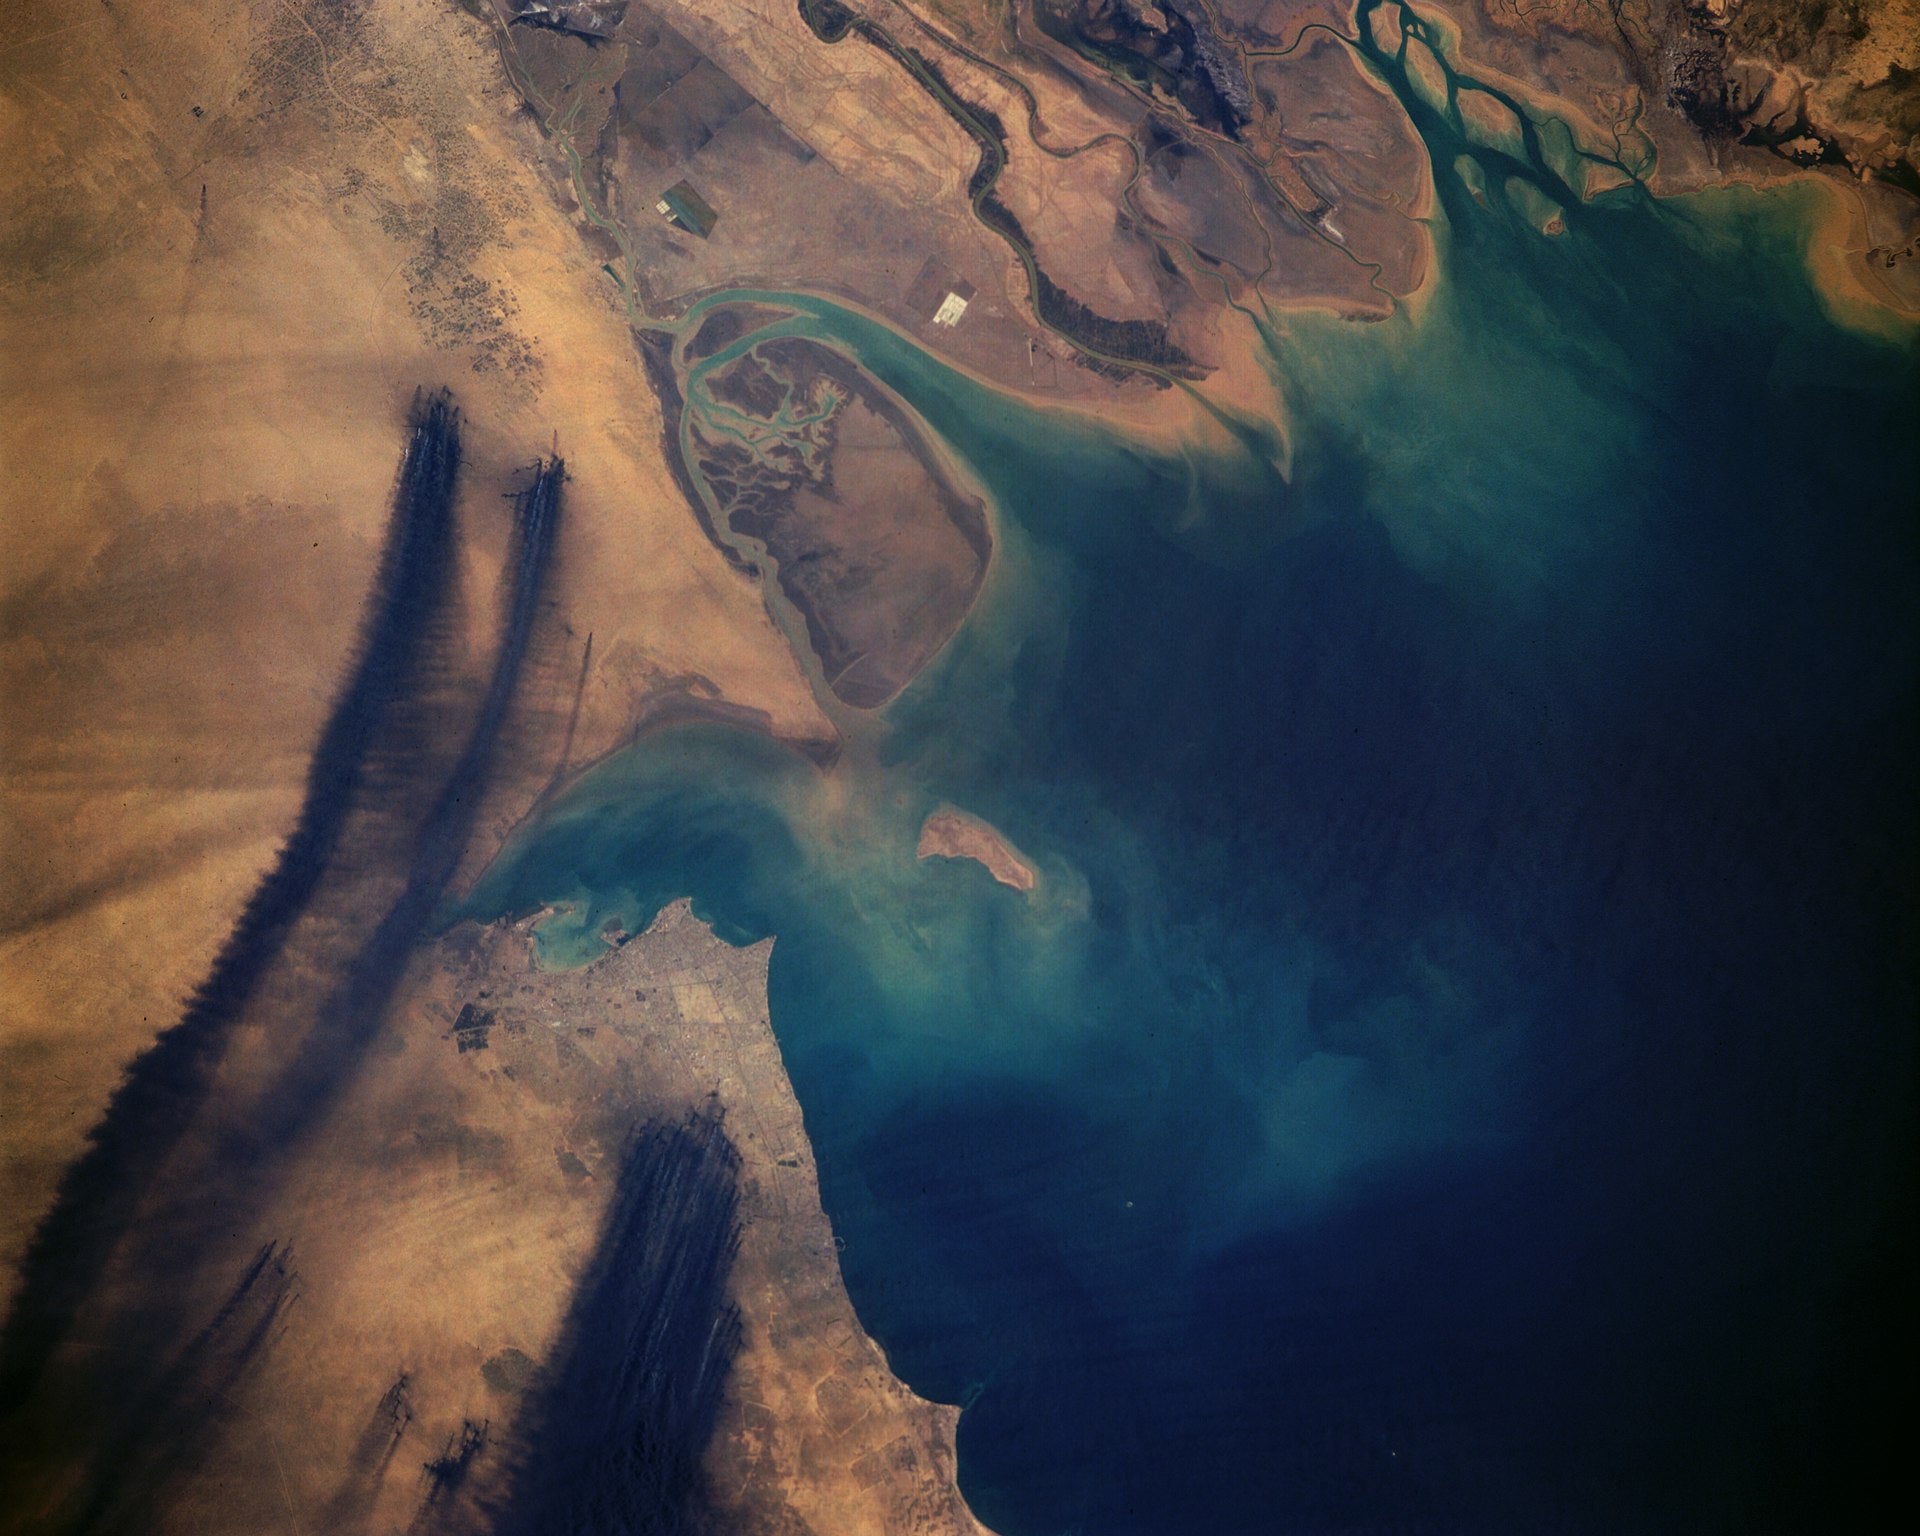 Fotografía aérea capturada desde el espacio que muestra el humo negro de los incendios de pozos petroleros.